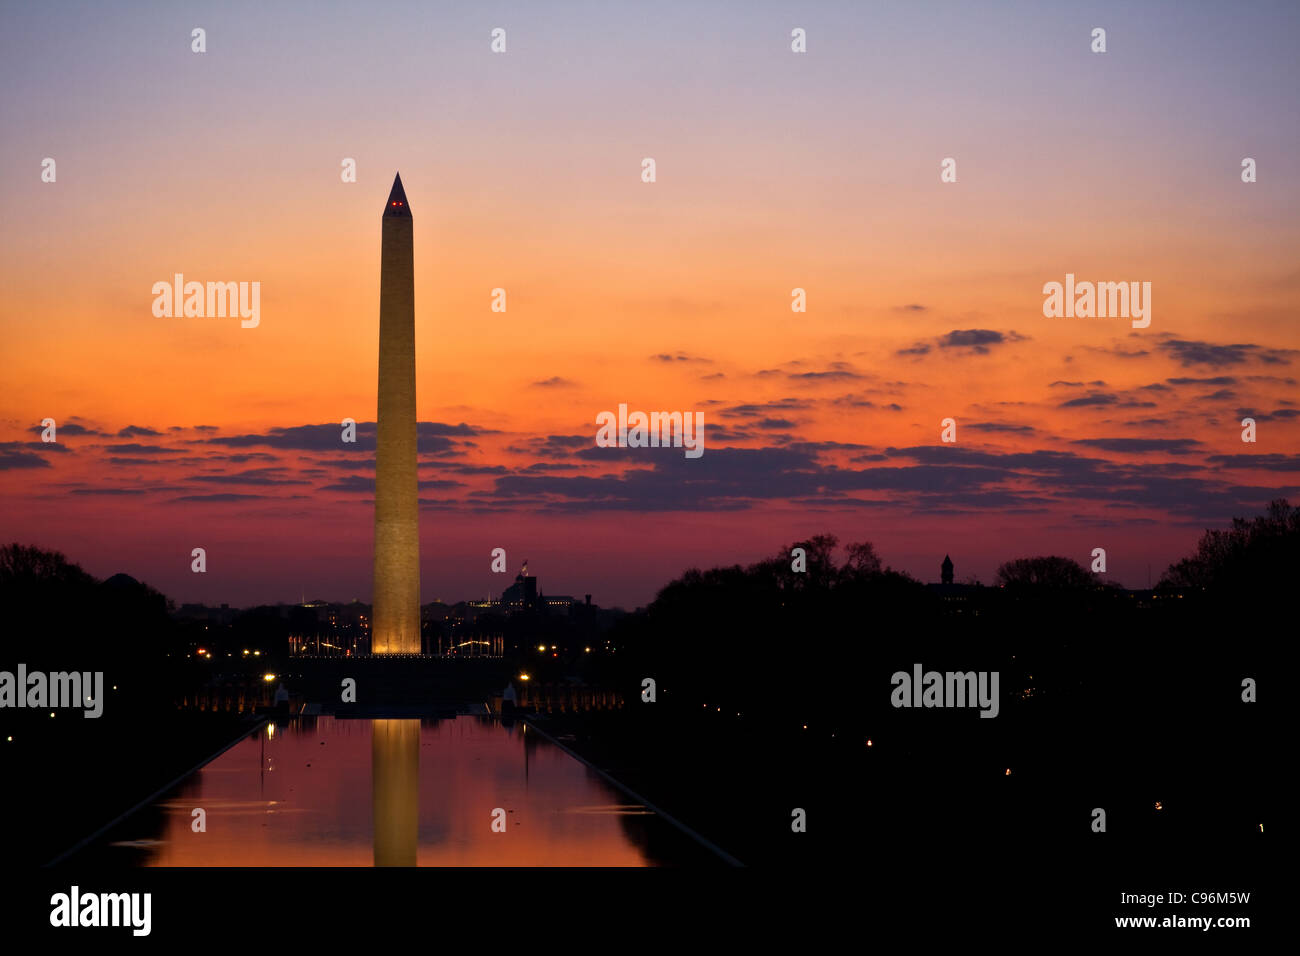 Washington Monument at Sunrise Stock Photo